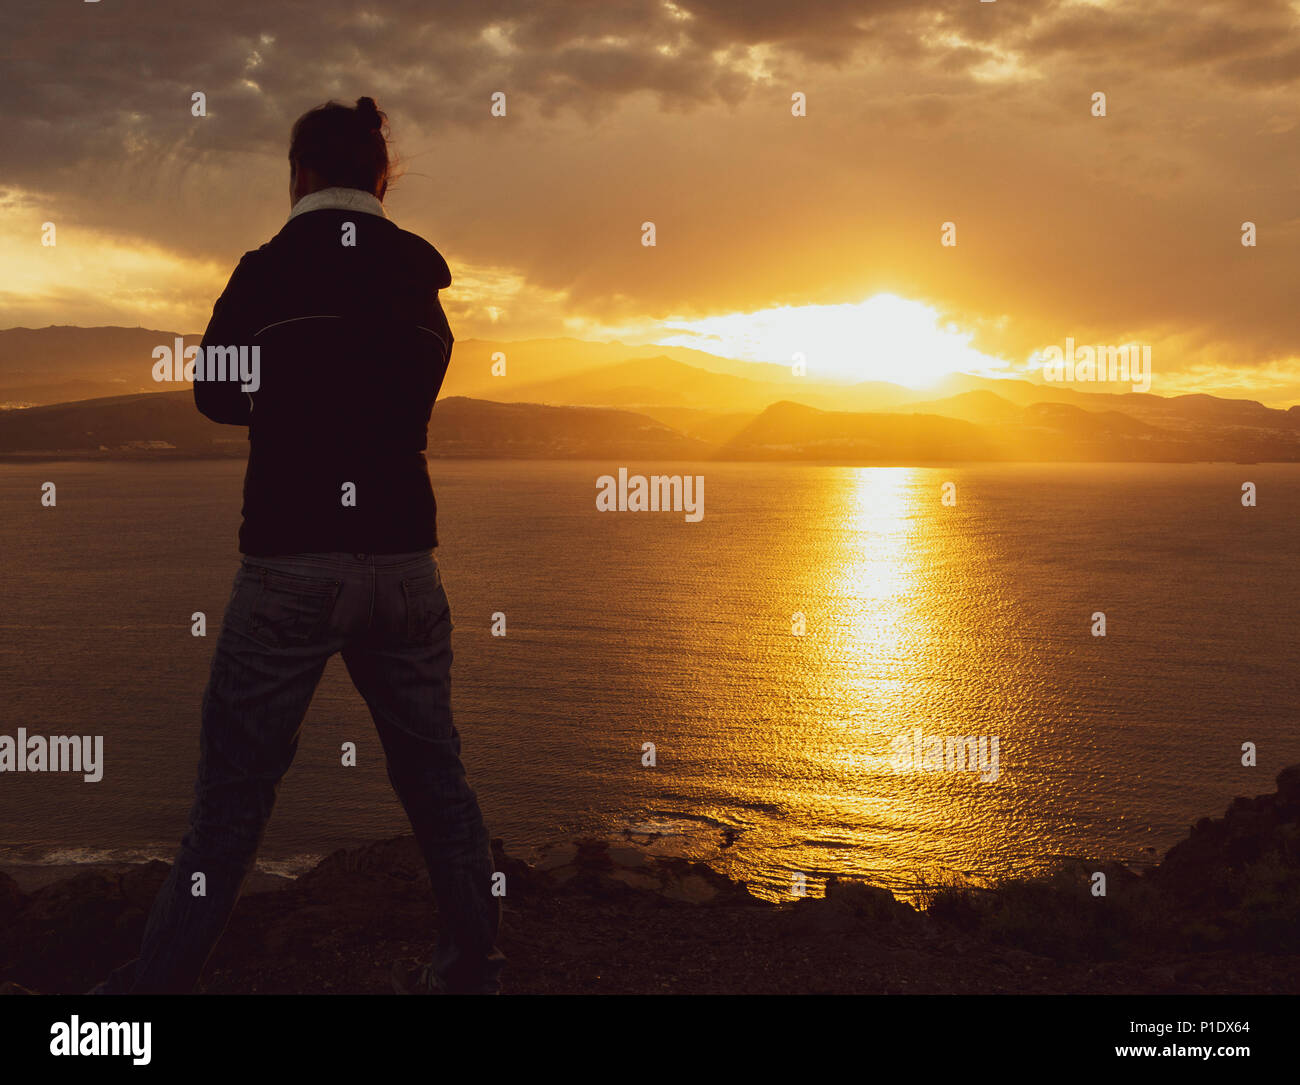 Rückansicht der Frau mit Blick auf das Meer von hohen Klippen bei Sonnenuntergang. Weibliche psychische Gesundheit/Depression, psychische Krankheit, Einsamkeit..., Konzept Bild Stockfoto